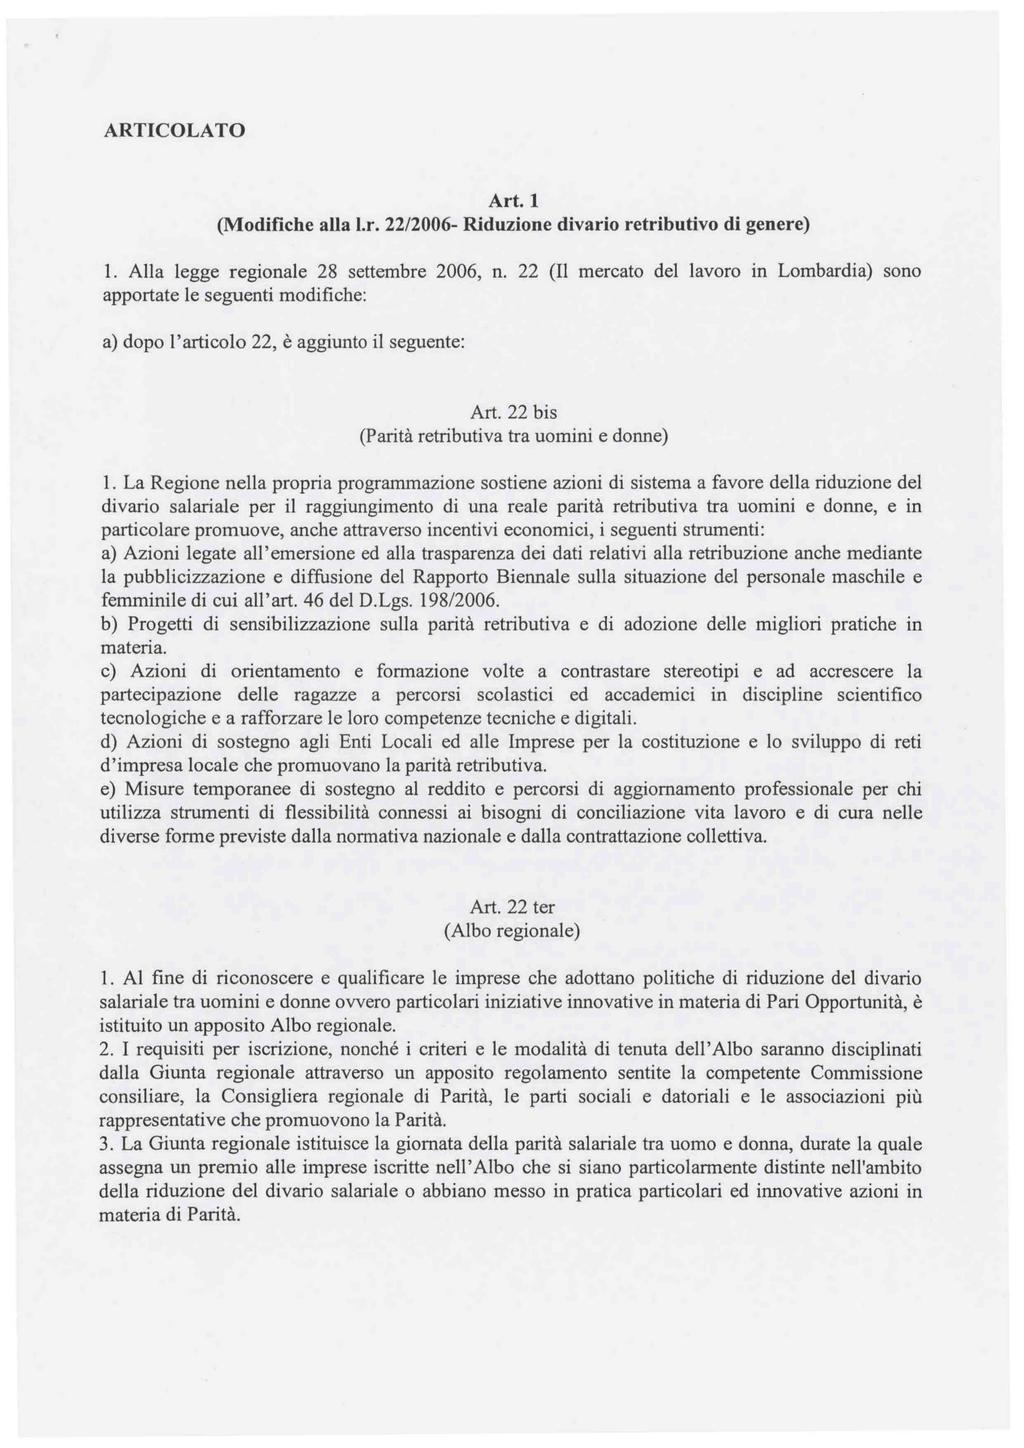 ARTICOLATO Art. 1 (Modifiche alla 1.r. 22/2006- Riduzione divario retributivo di genere) 1. Alla legge regionale 28 settembre 2006, n.